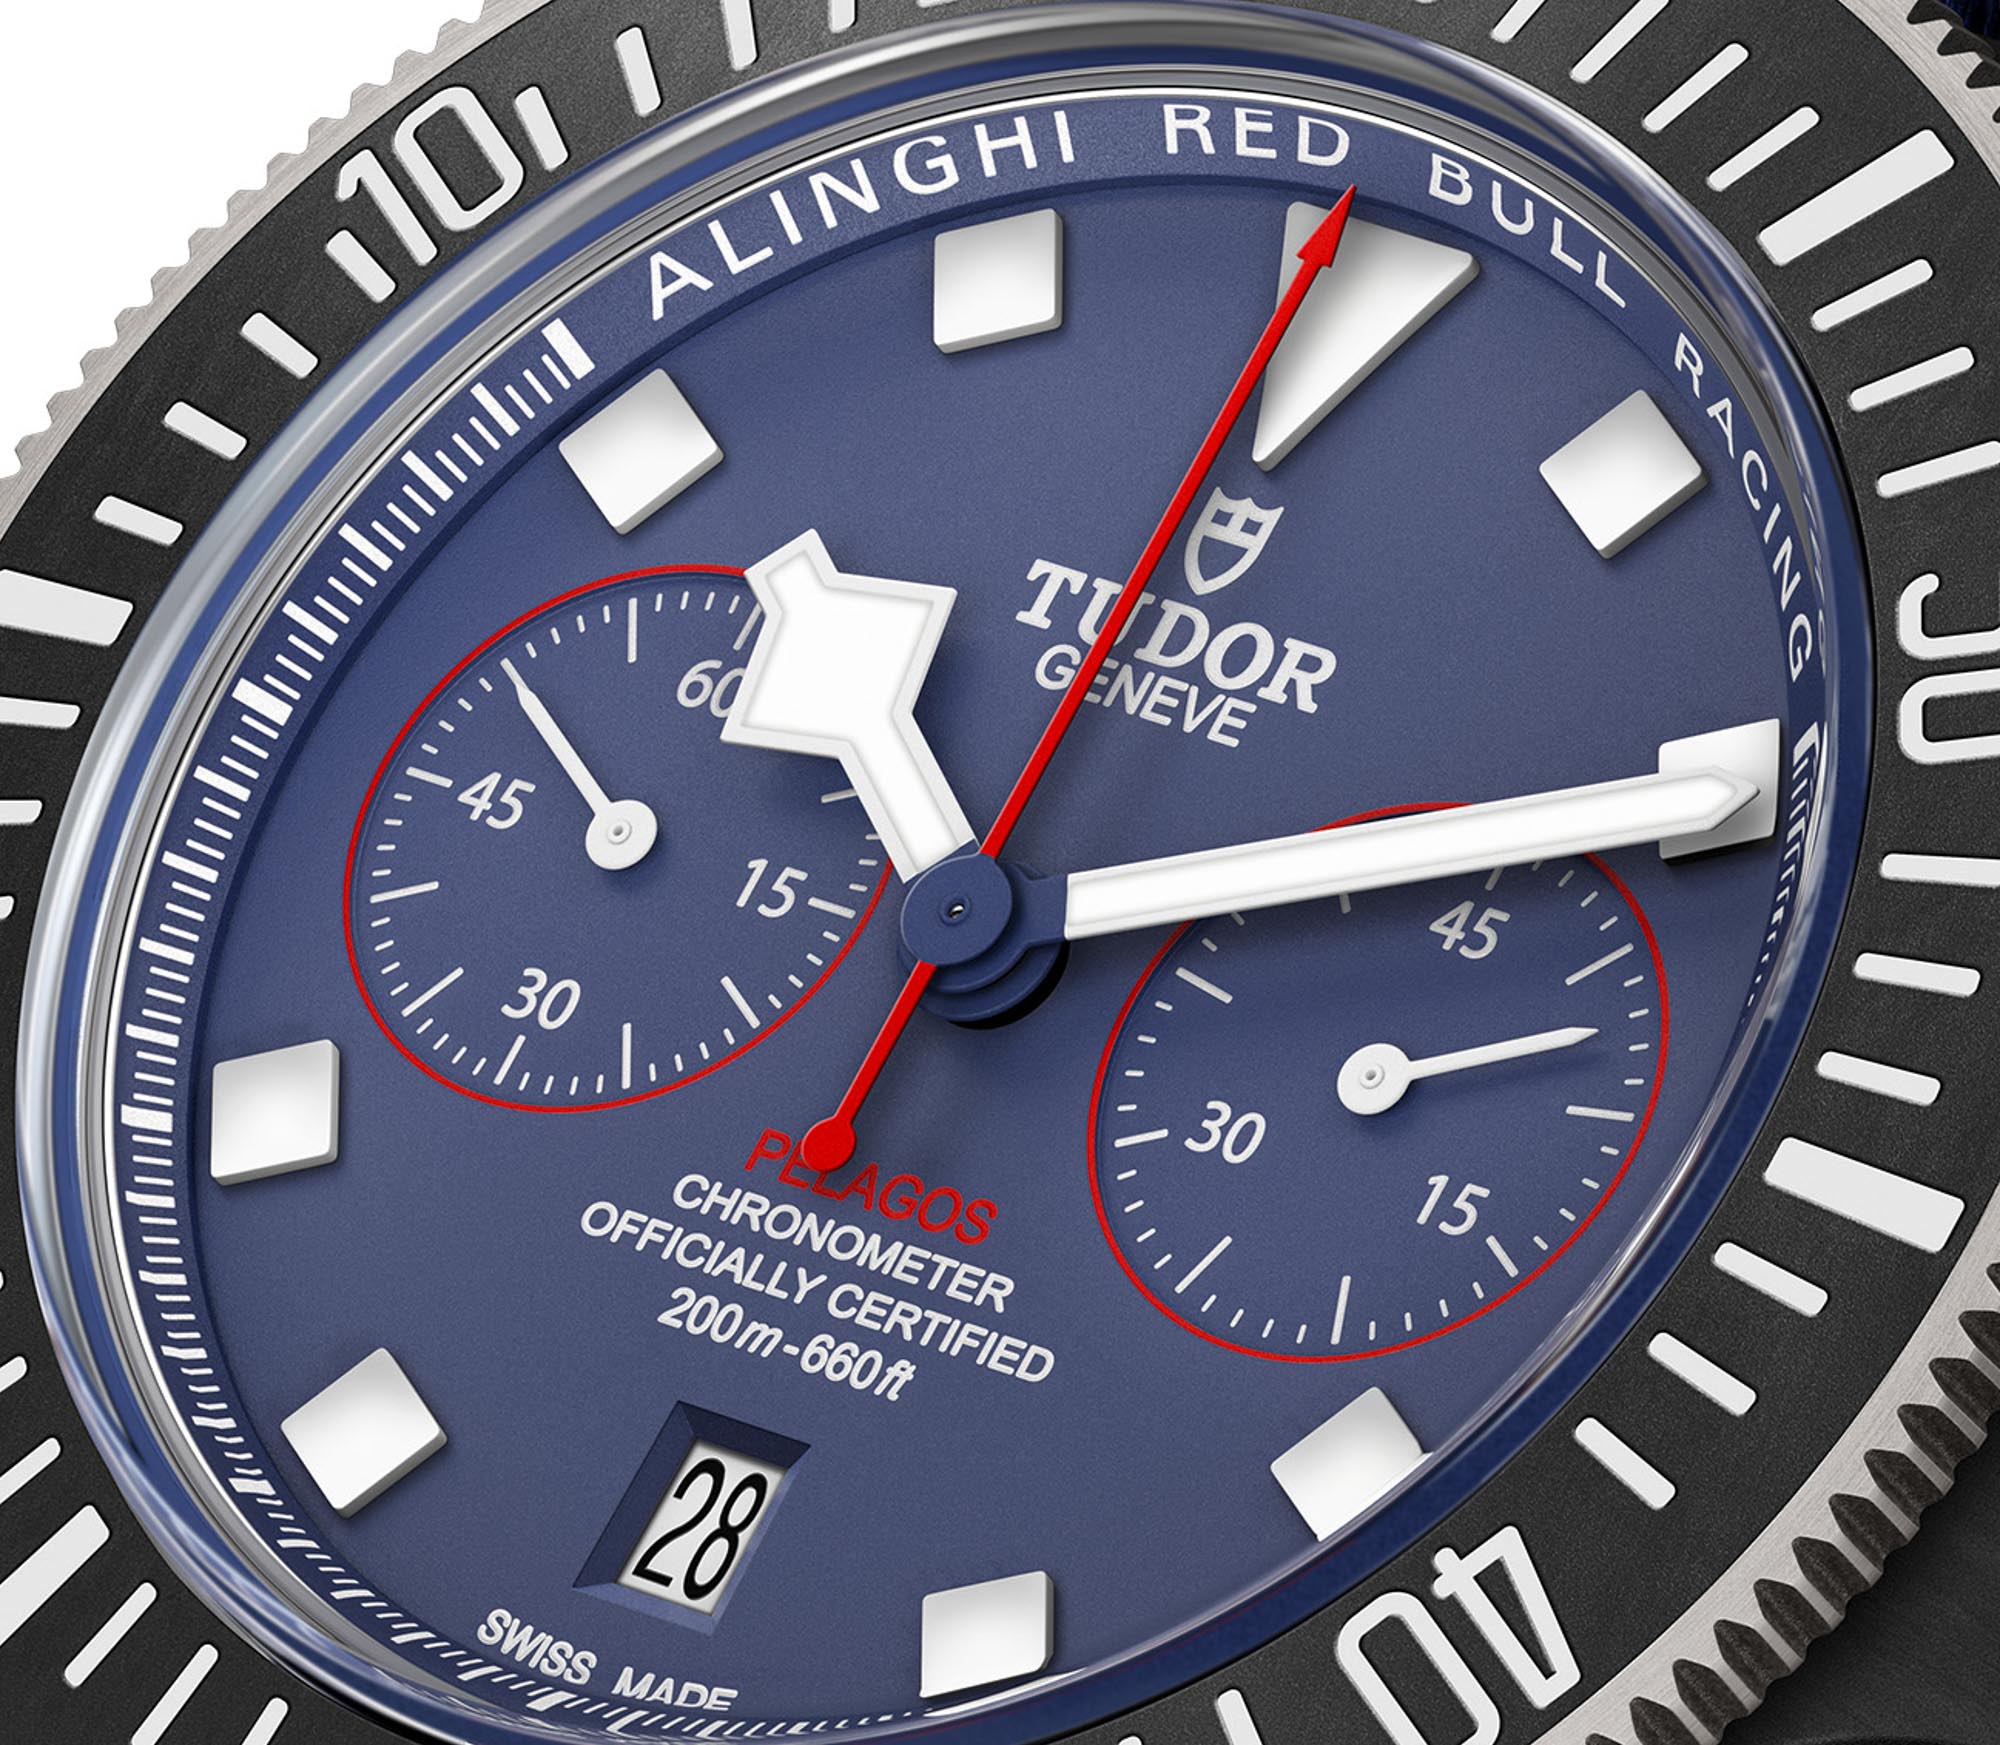 Tudor выпускает новый хронограф с часами Pelagos FXD Chrono Alinghi Red Bull Racing Edition